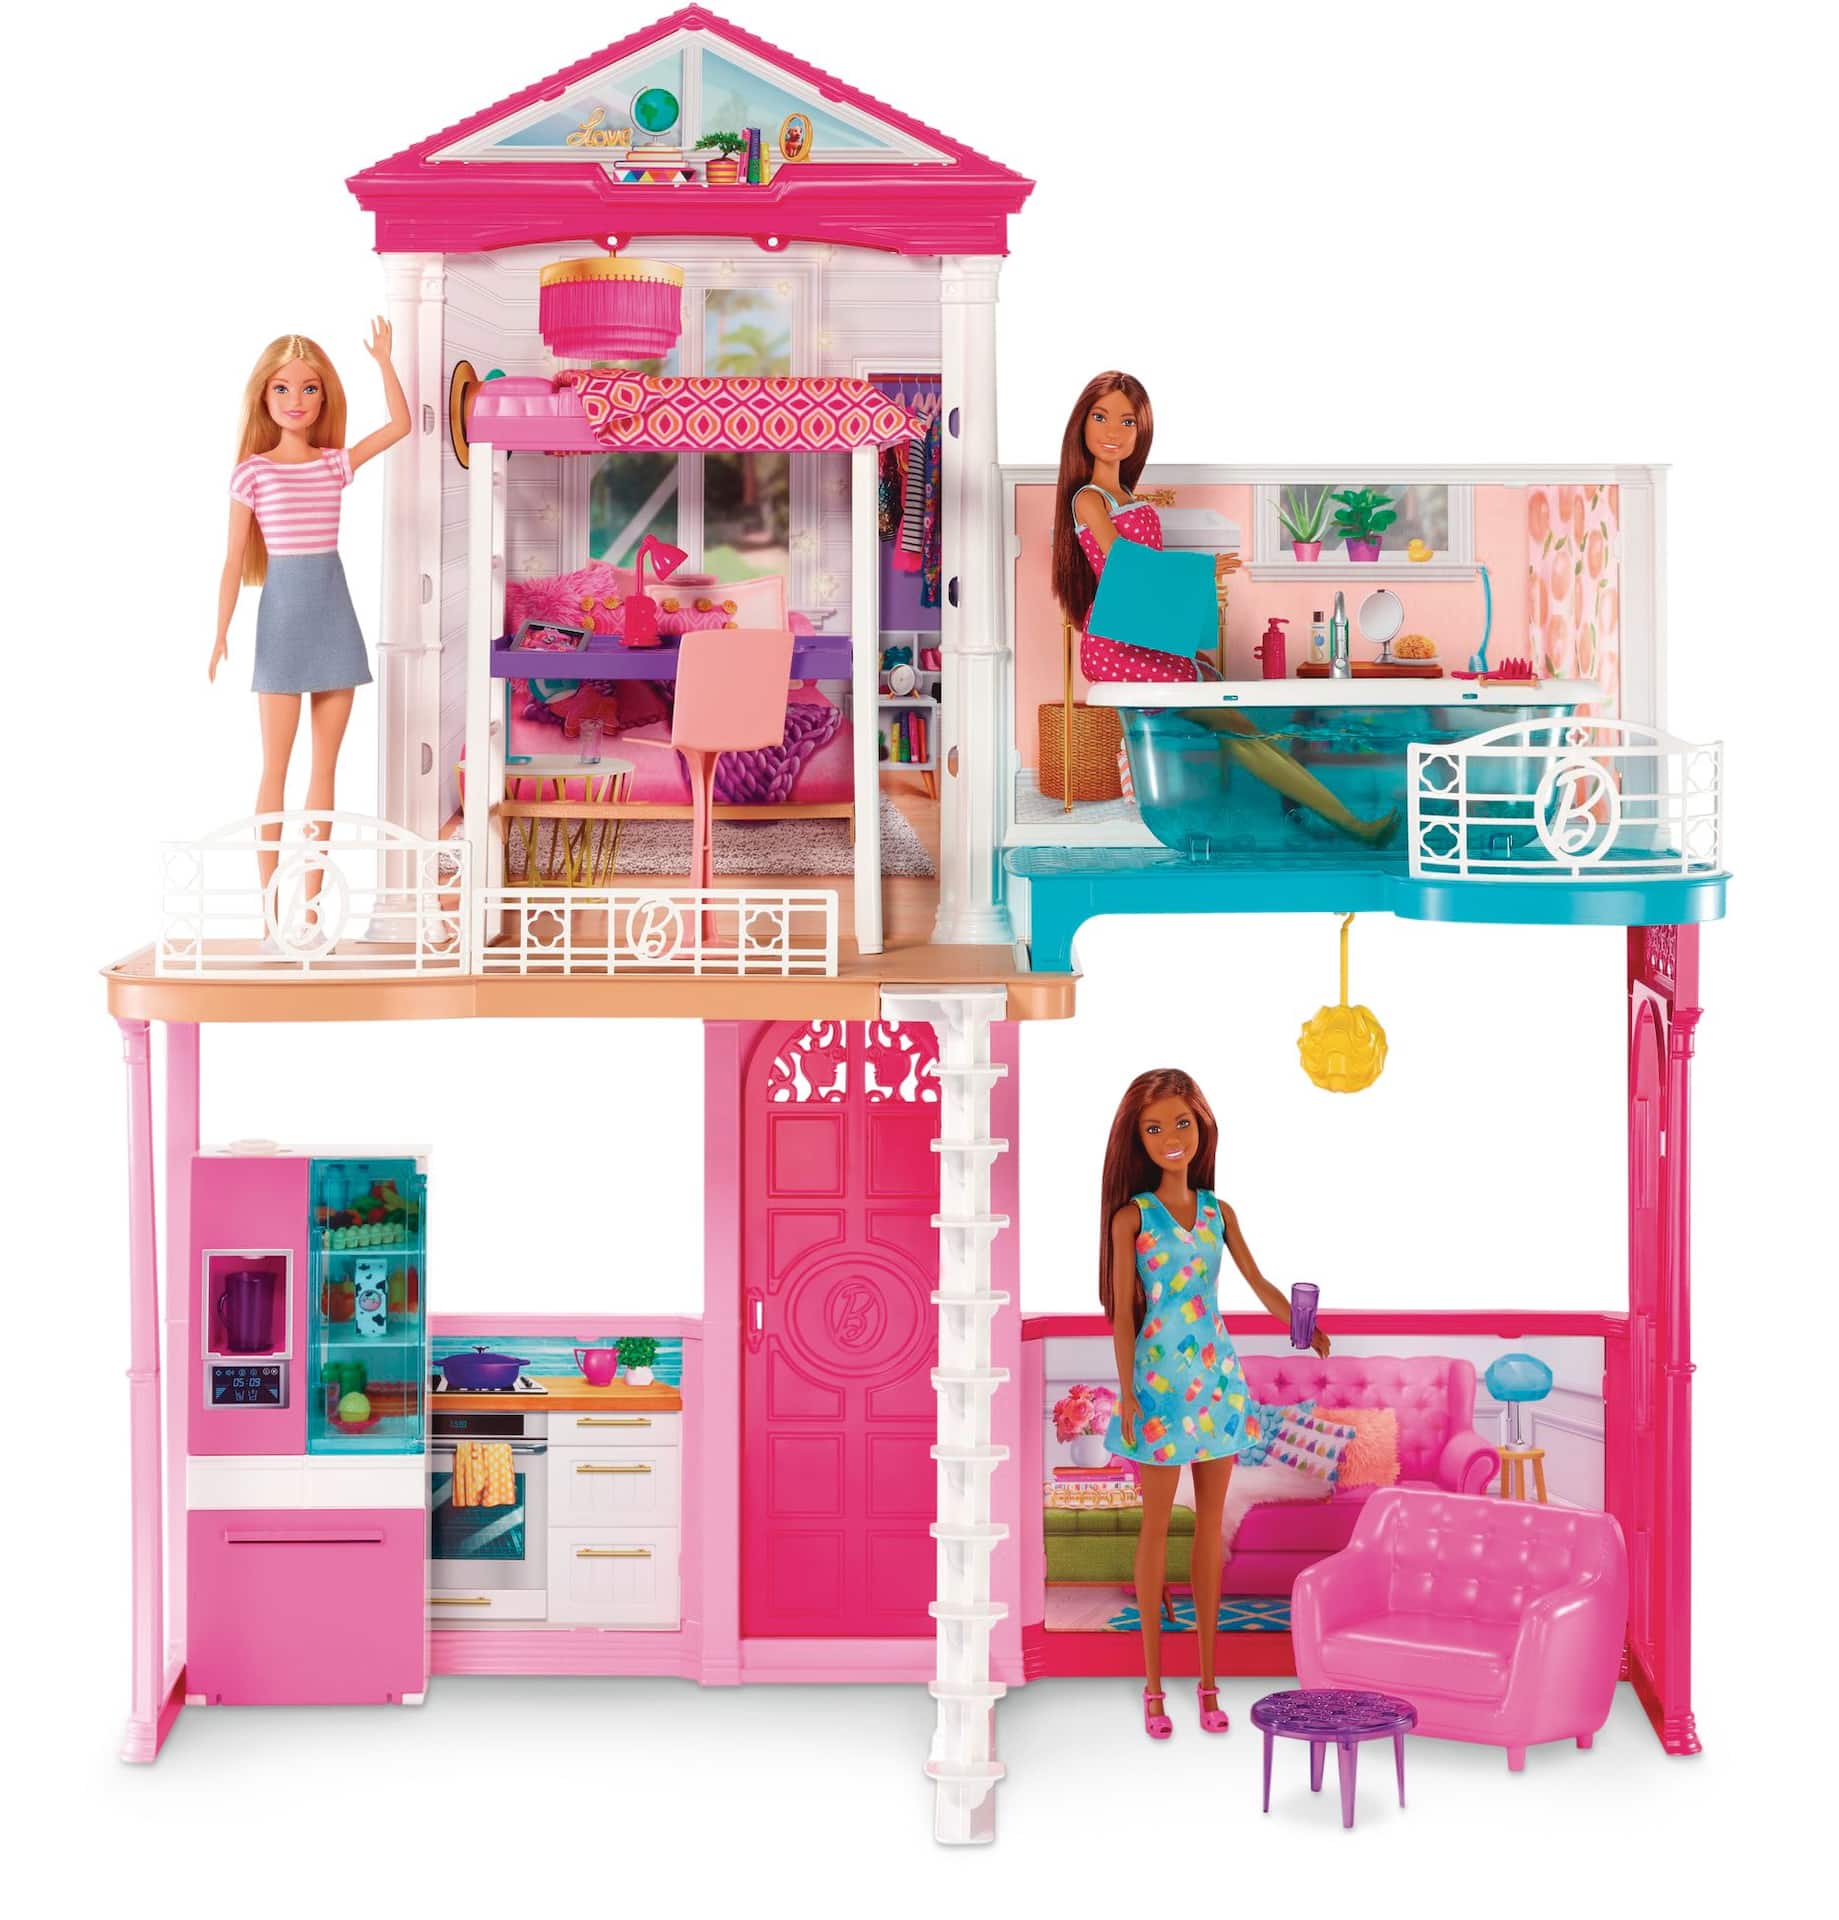 Maison Barbie, 3 poupées inclues, meubles et accessoires, 3 ans et